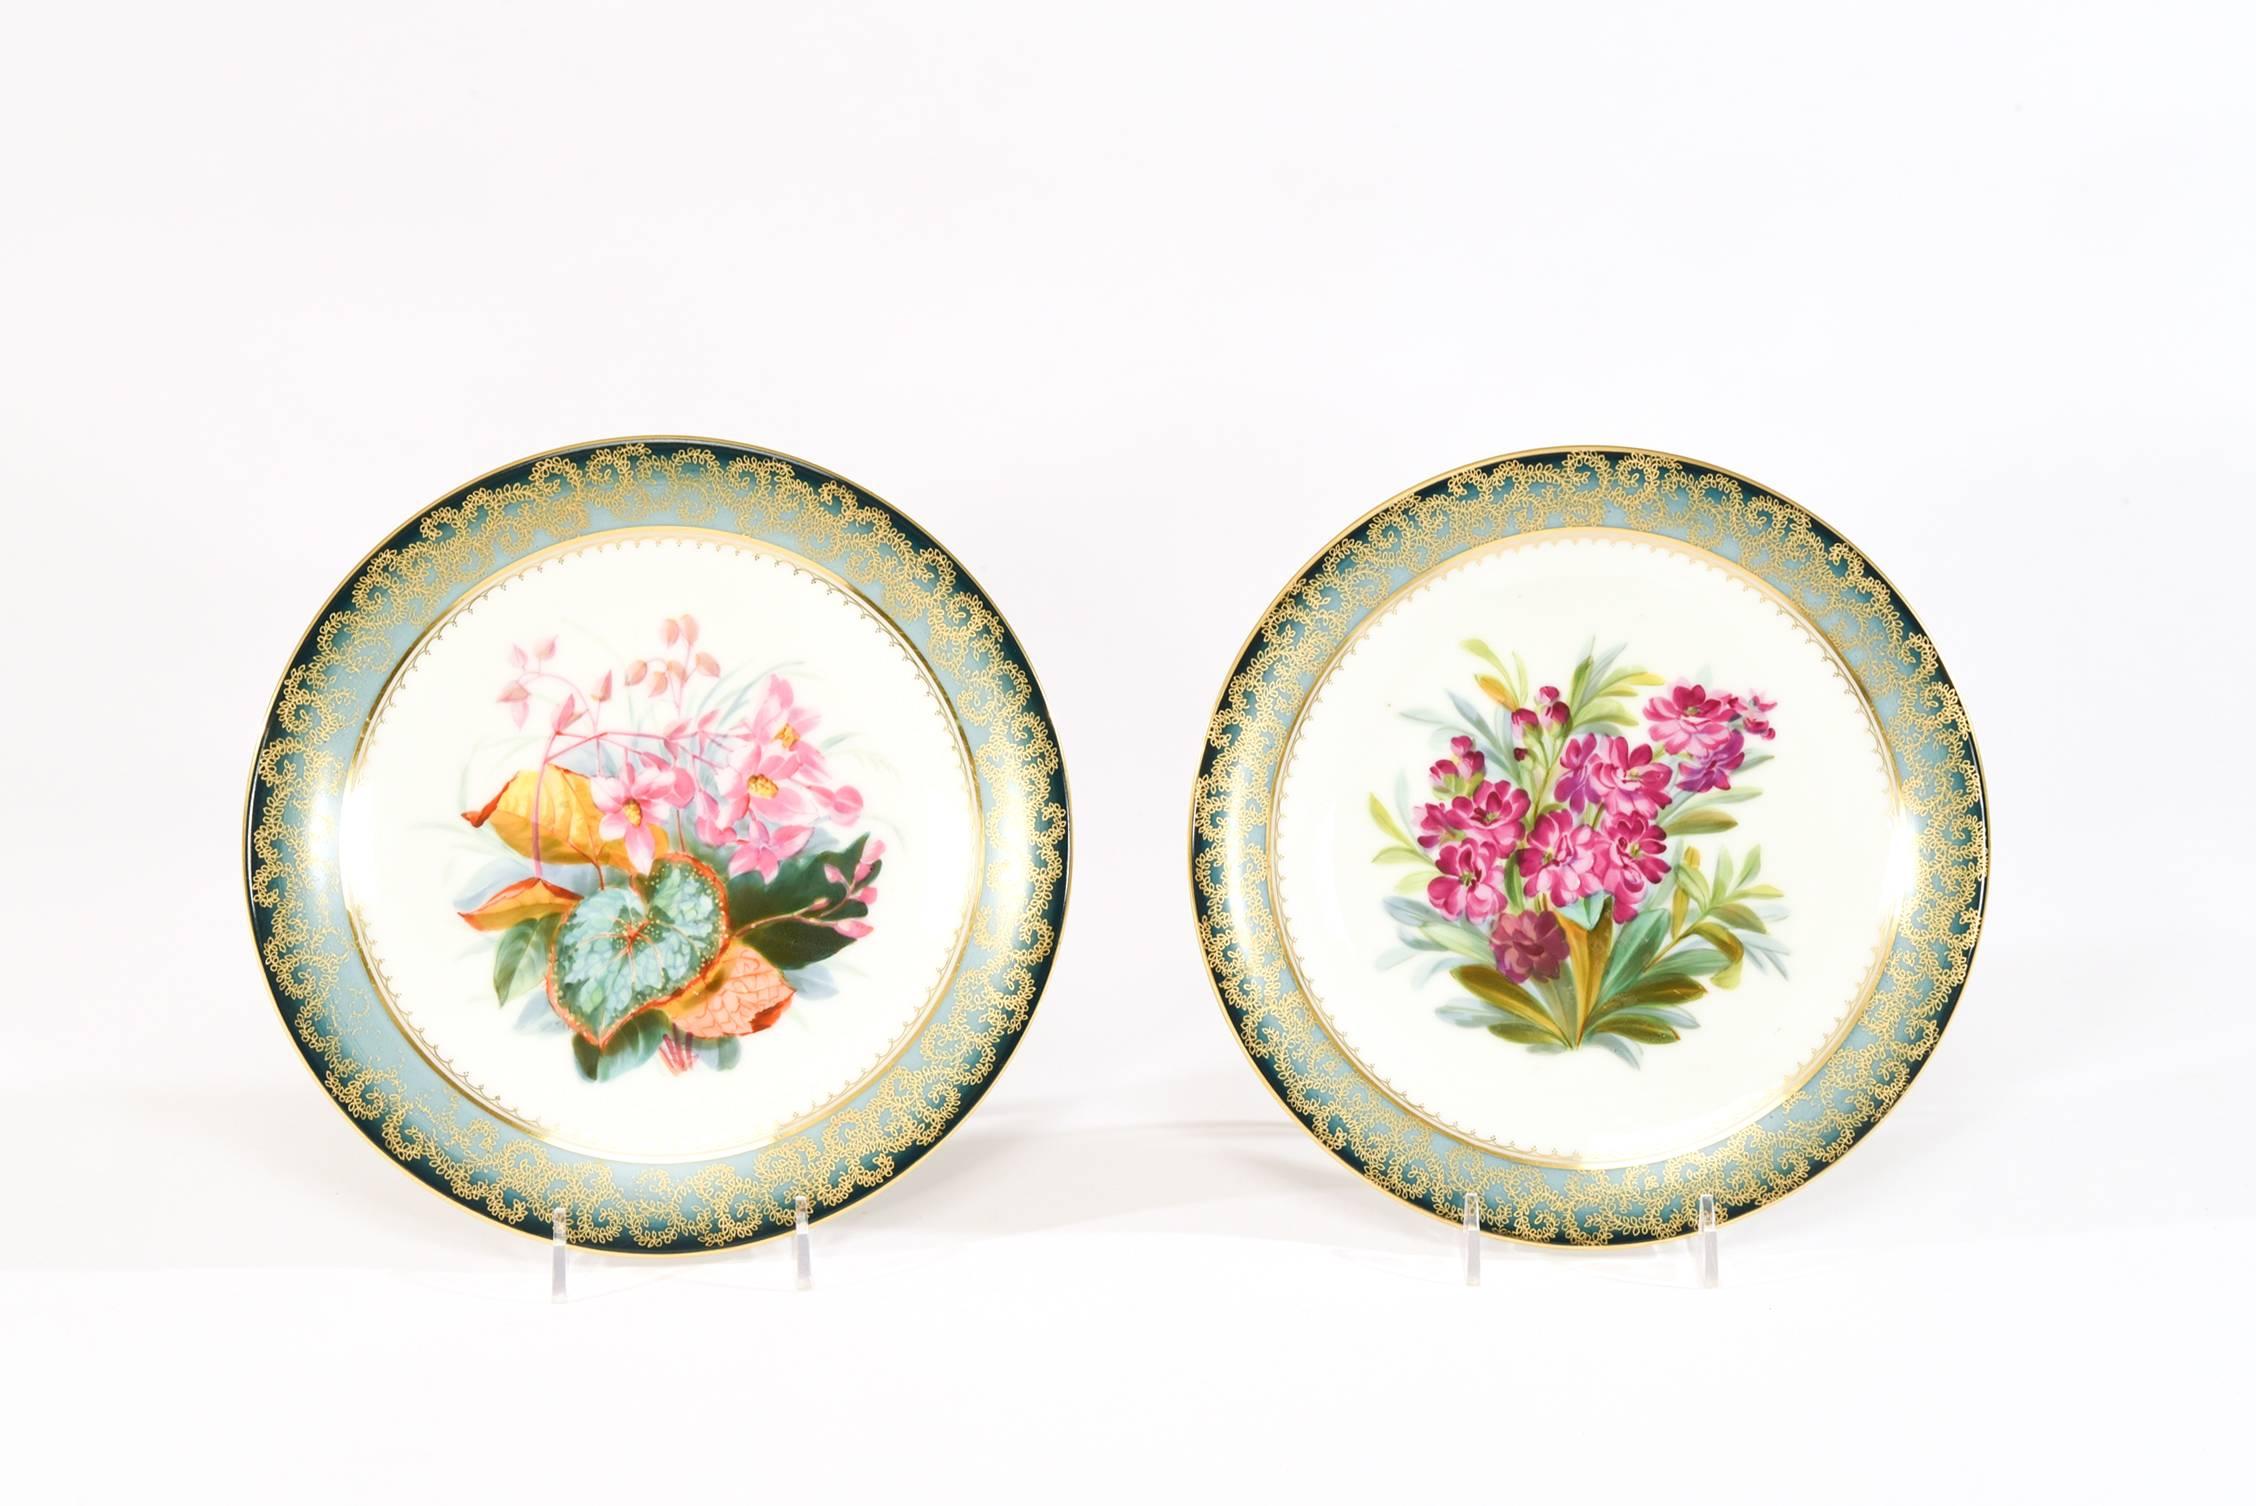 Dieses Set handgemalter botanischer Dessertteller zeigt ein lebhaftes Blumenmotiv in einer abwechslungsreichen Palette. Jeder Teller wird von einer ungewöhnlichen impressionistischen Bordüre umrahmt, die von einem dunklen blaugrünen Farbton zu einem